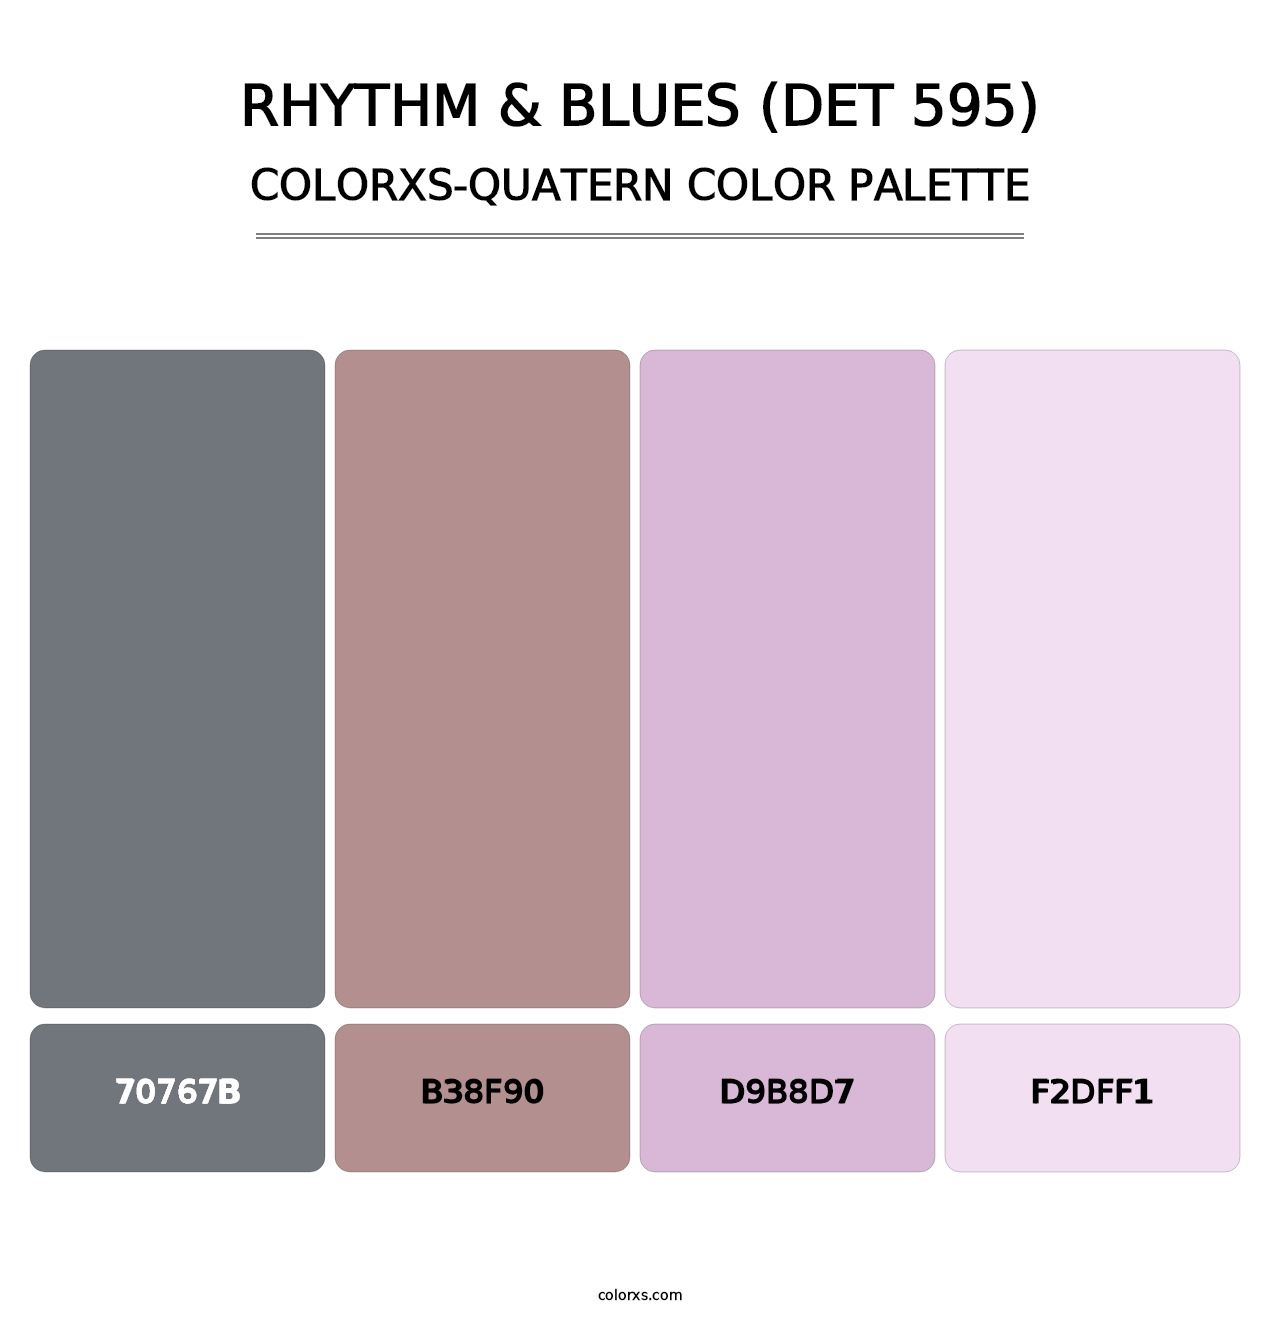 Rhythm & Blues (DET 595) - Colorxs Quatern Palette